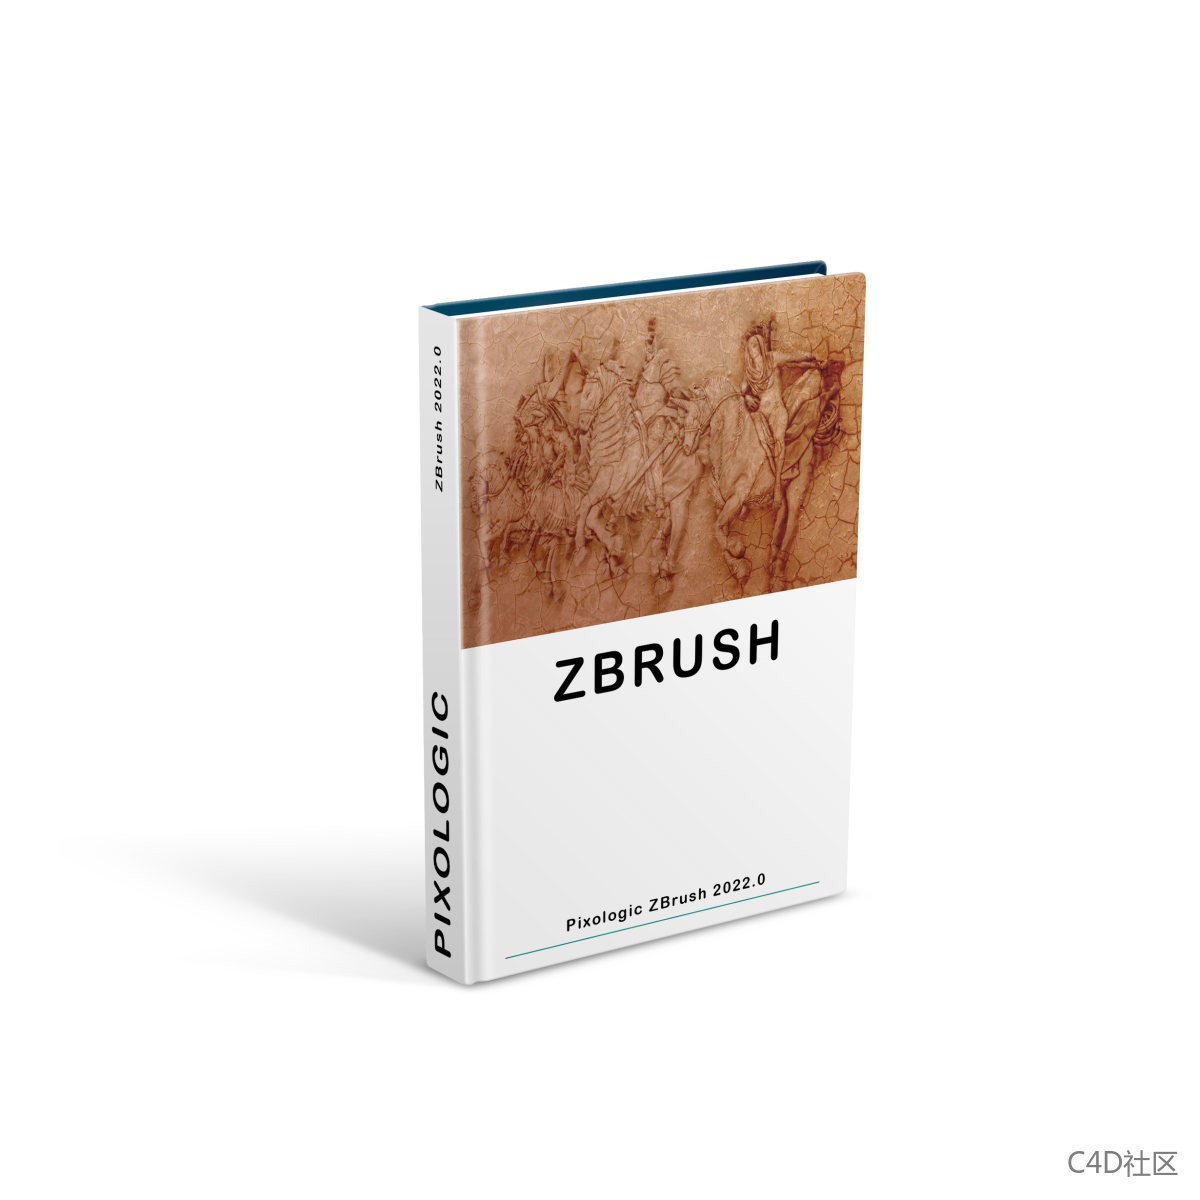 Pixologic ZBrush 2022.0.6 Crack software破解版